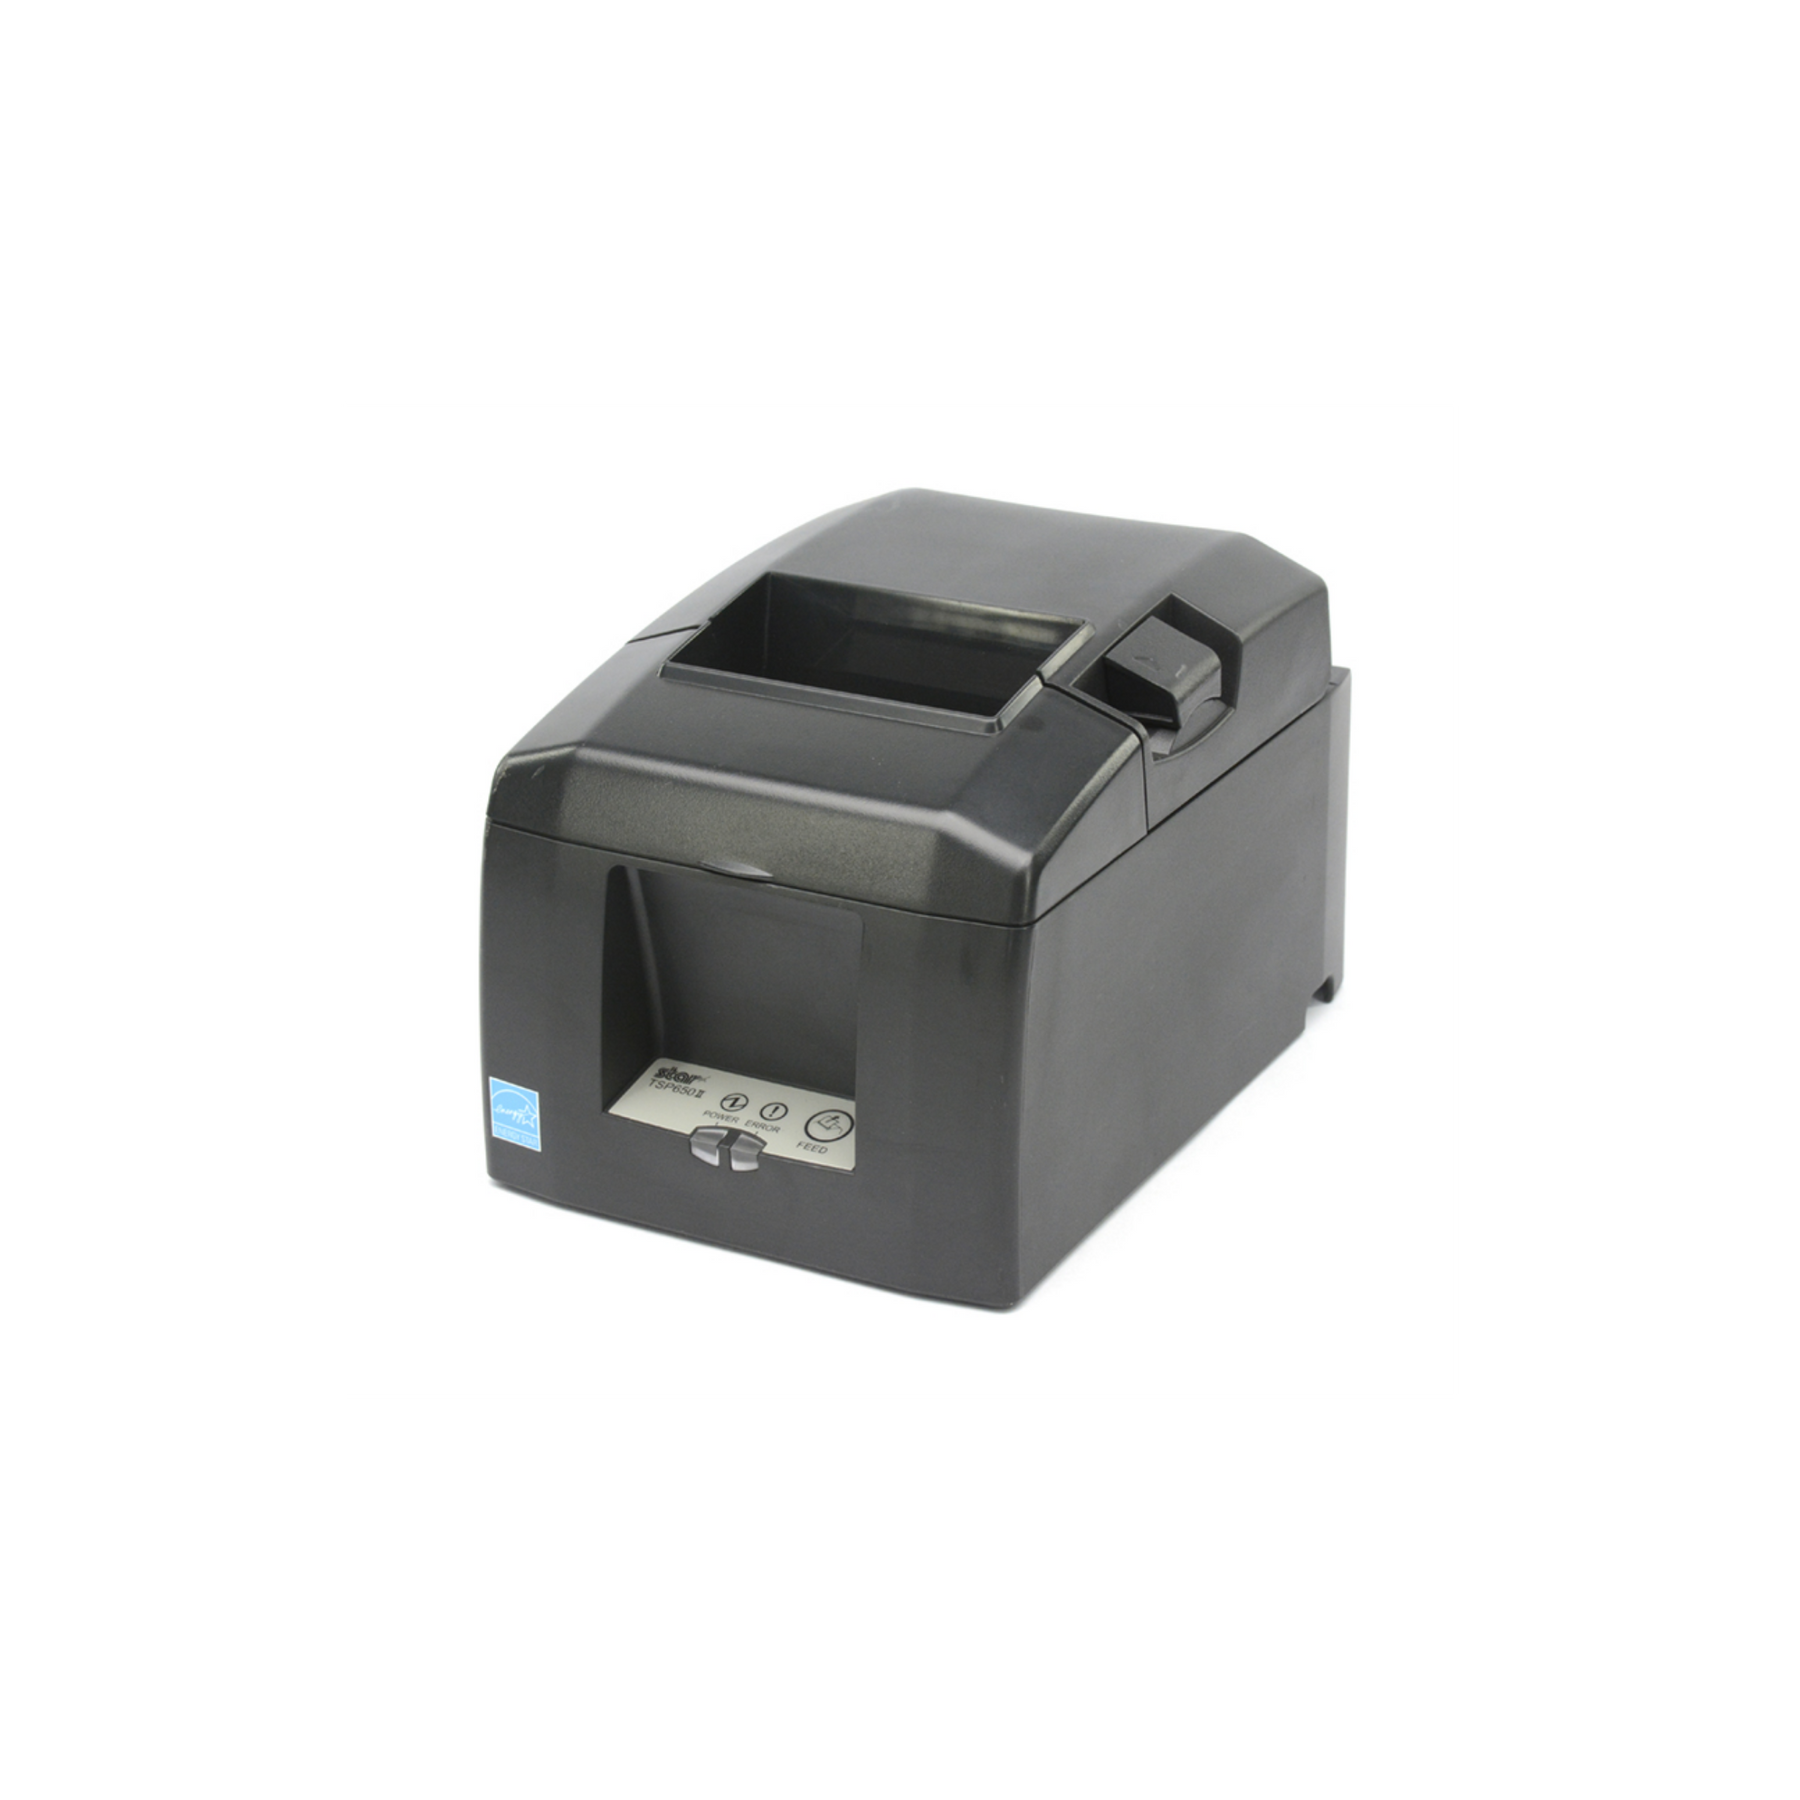 Star Micronics, Thermal Receipt Printer, TSP654II CloudPRNT 24